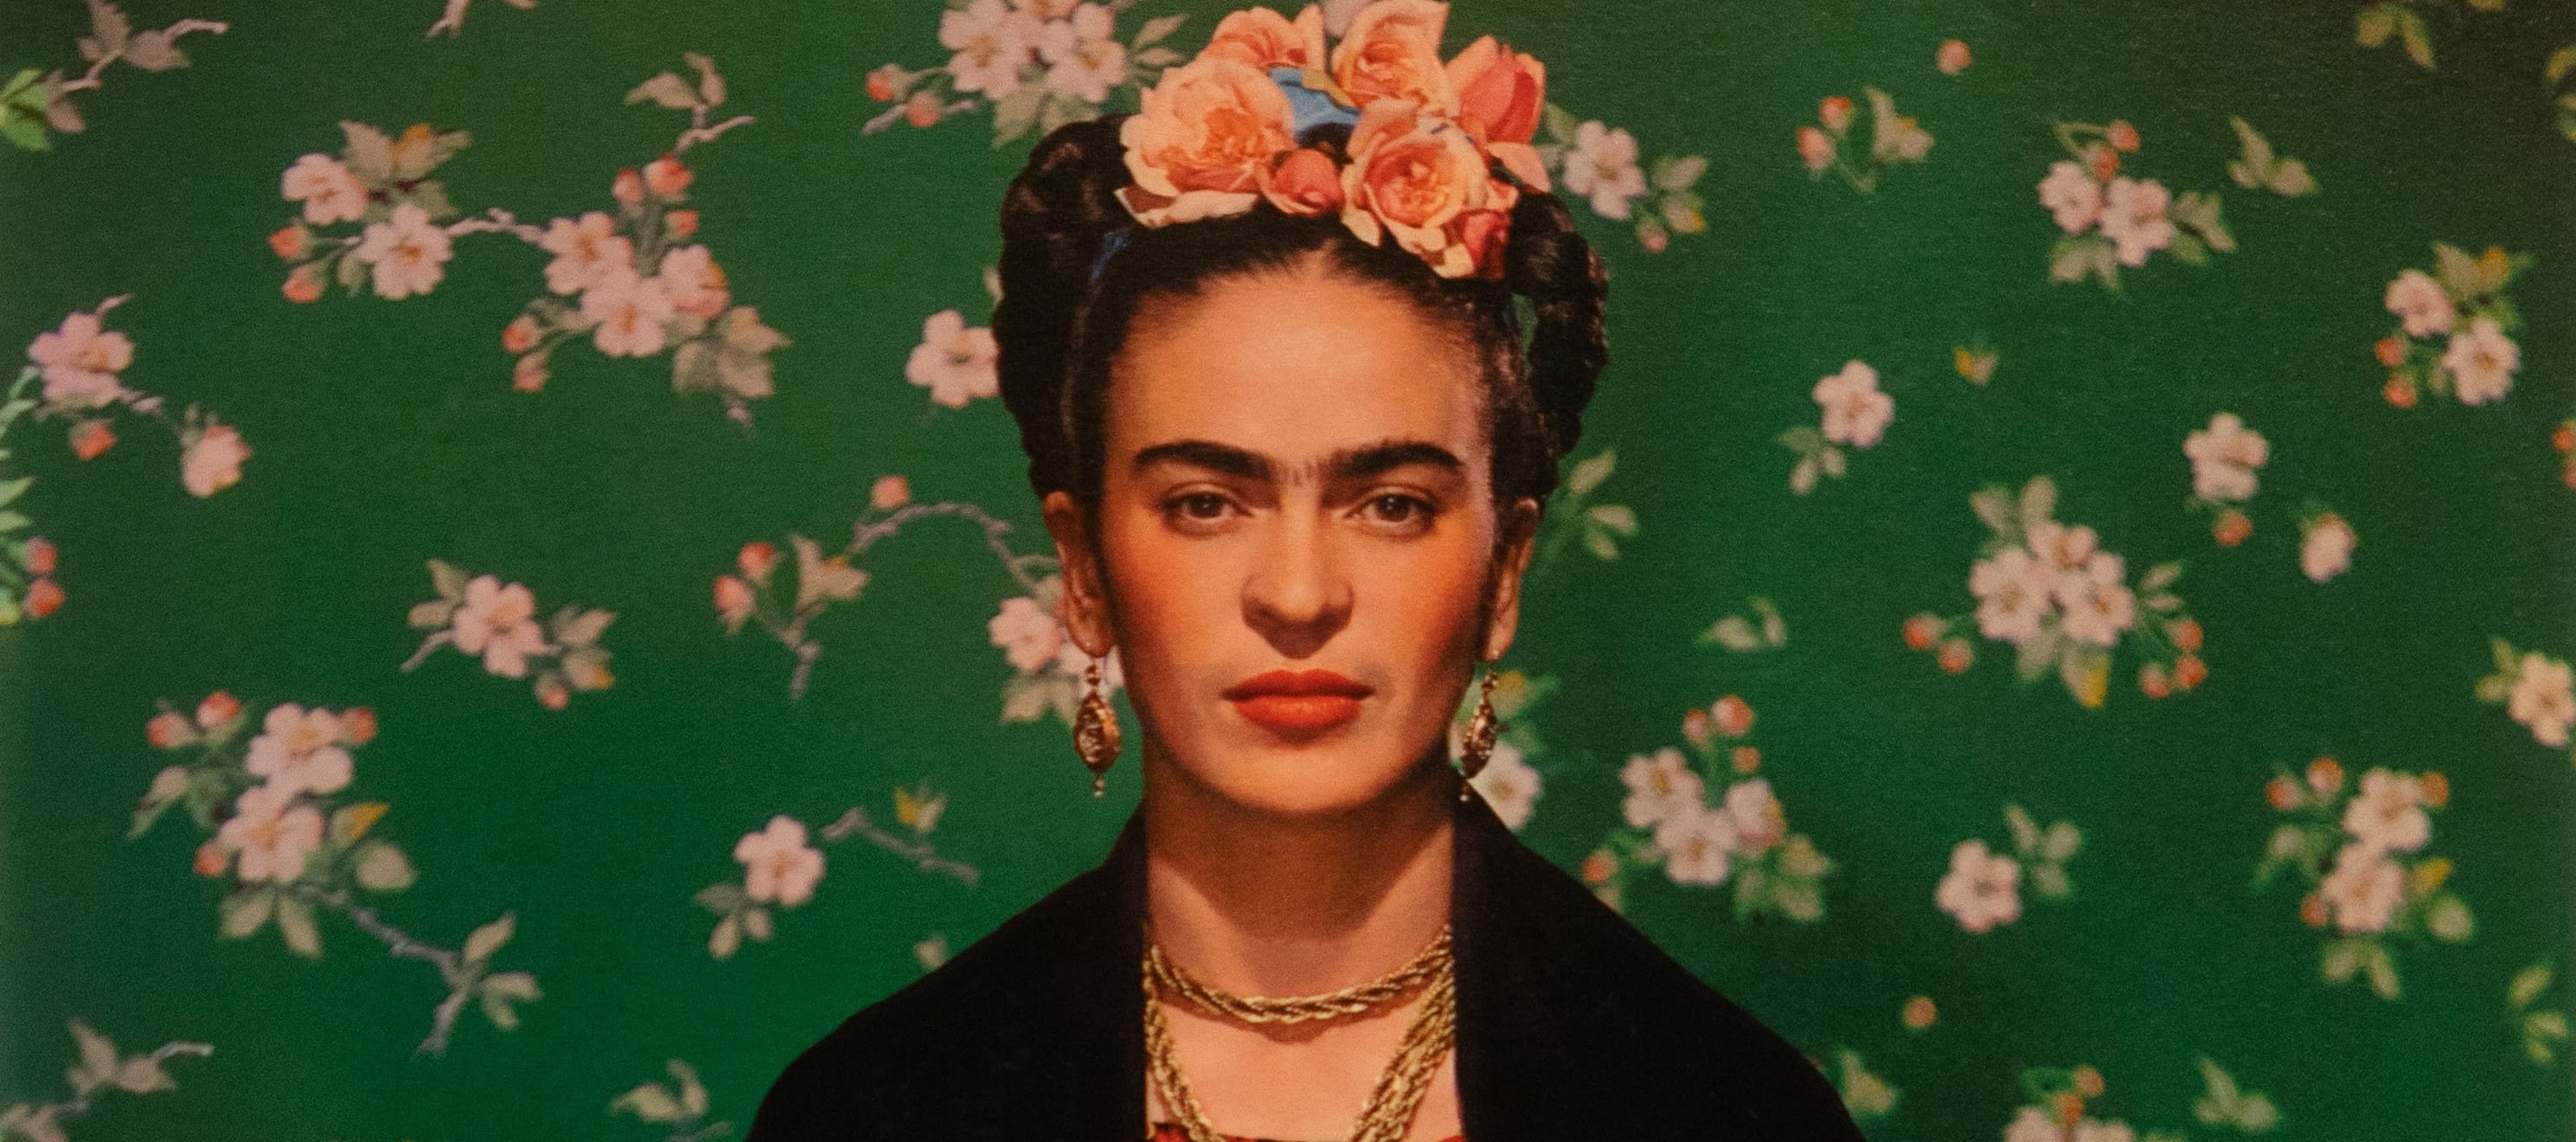 Frida Khalo a unique talent